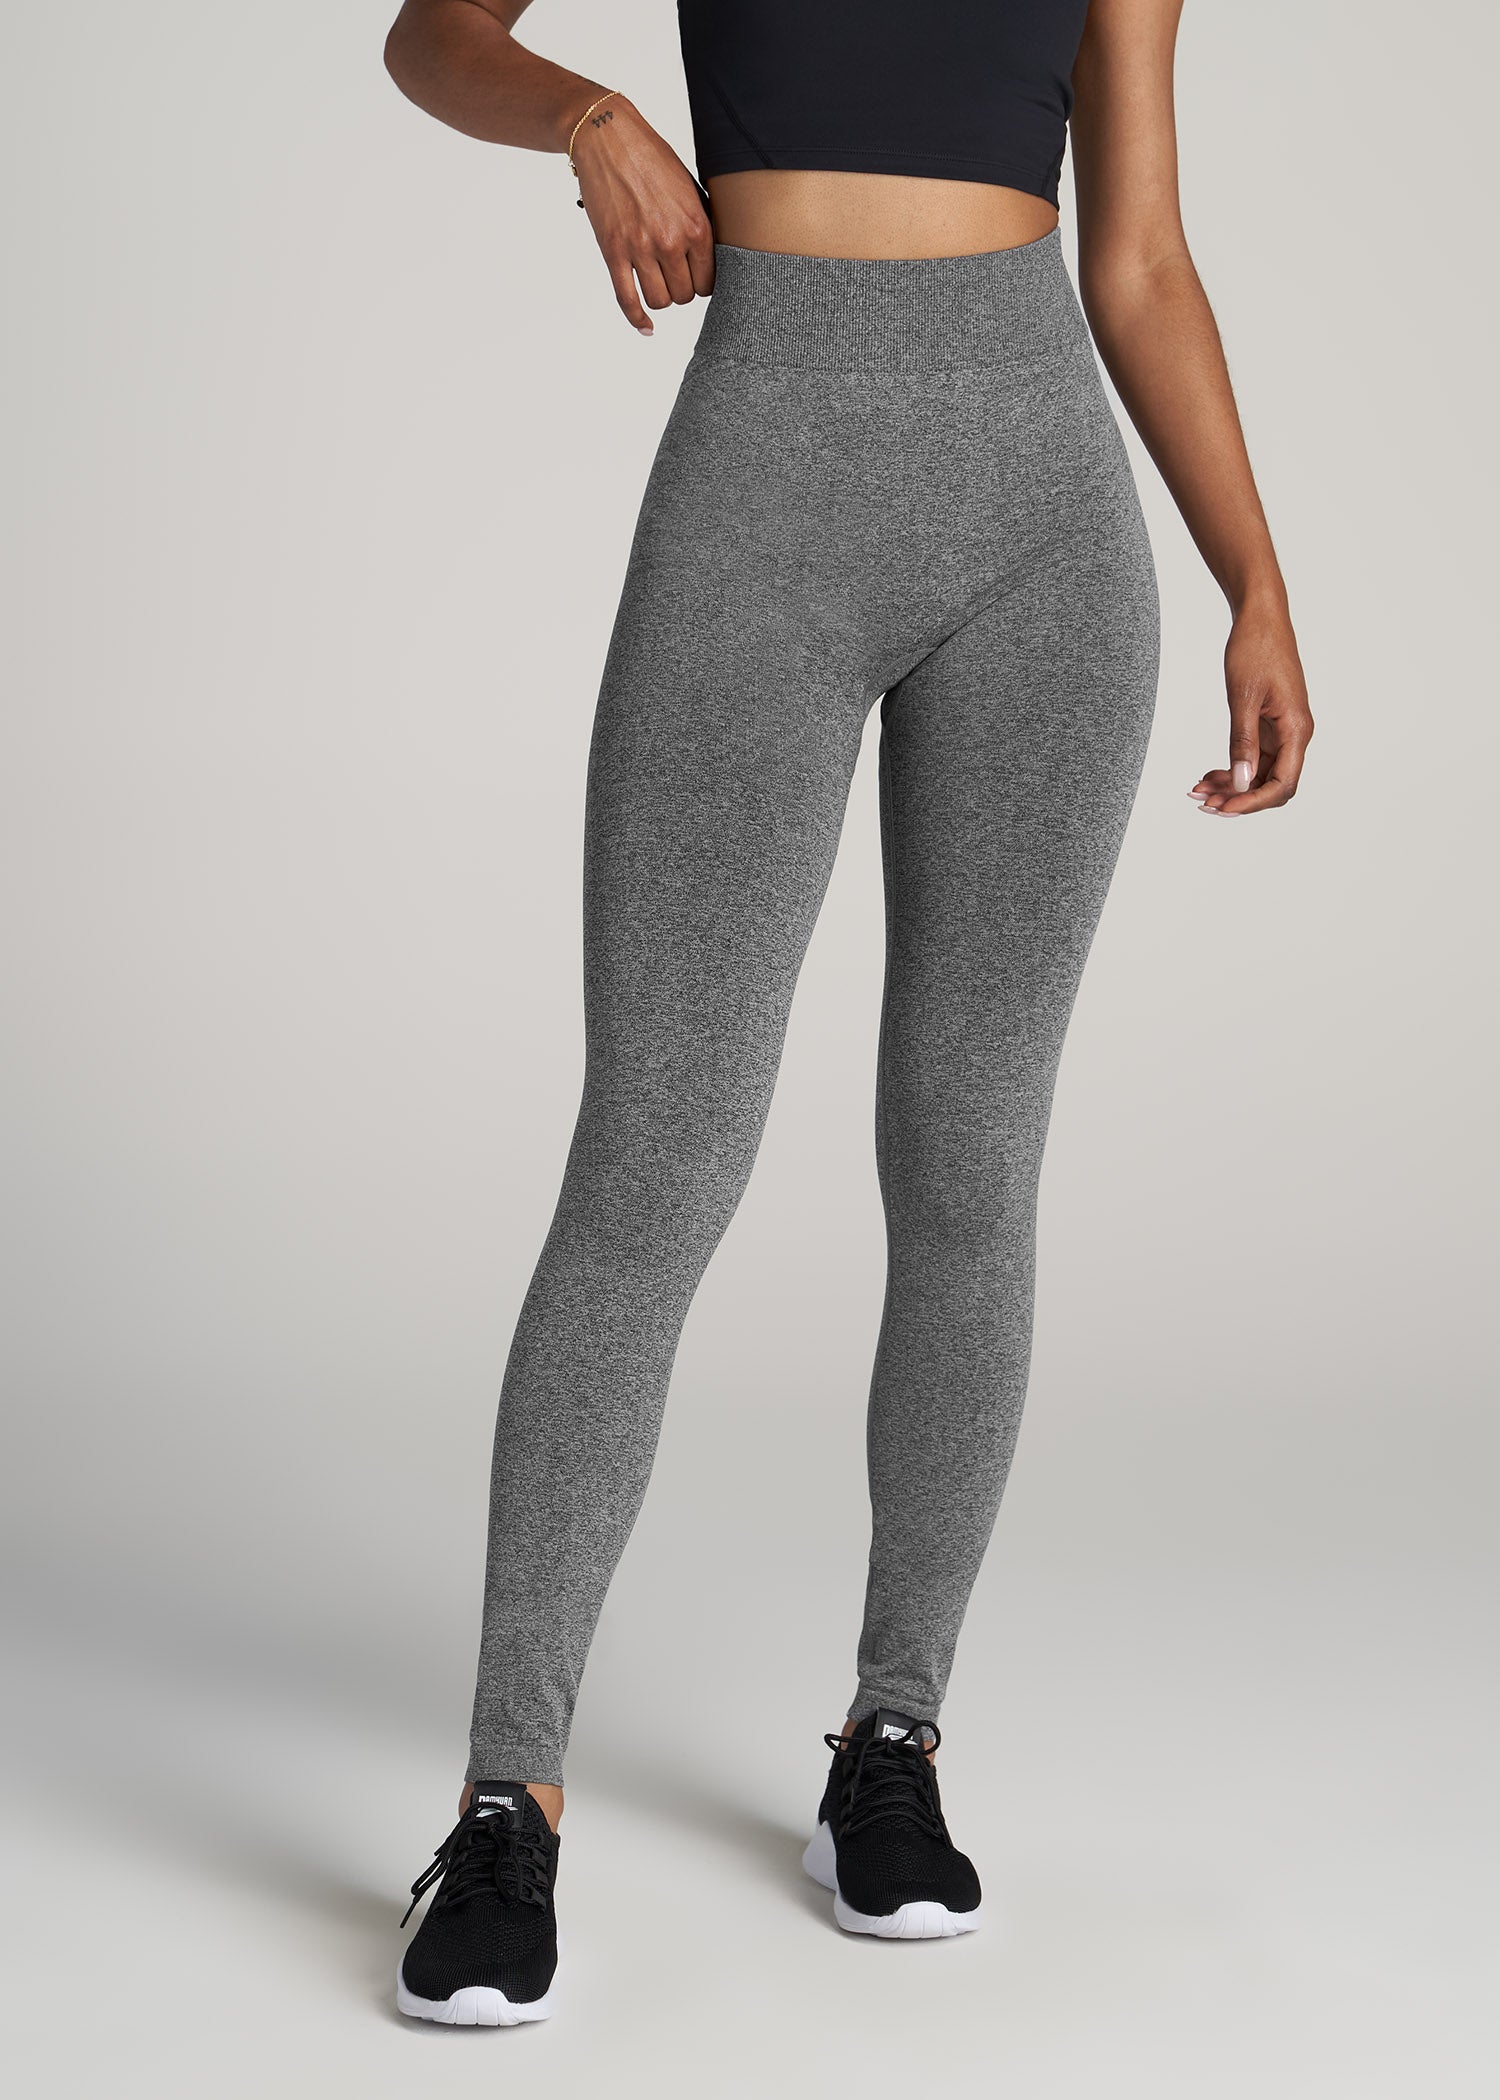 Seamless Leggings for Tall Women in Black & Grey Heather XL / Tall / Black & Grey Heather